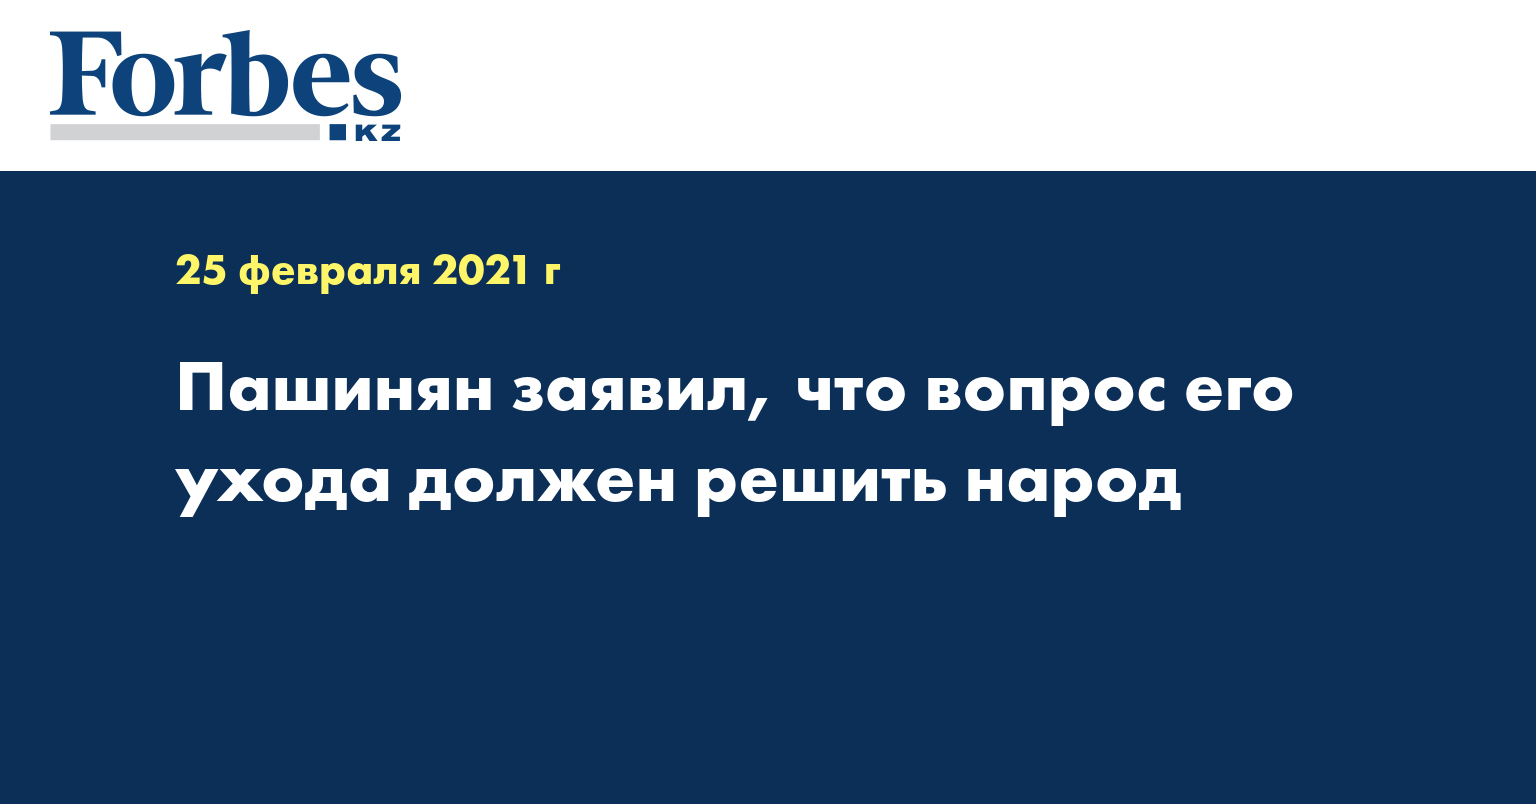 Пашинян заявил, что вопрос его ухода должен решить народ